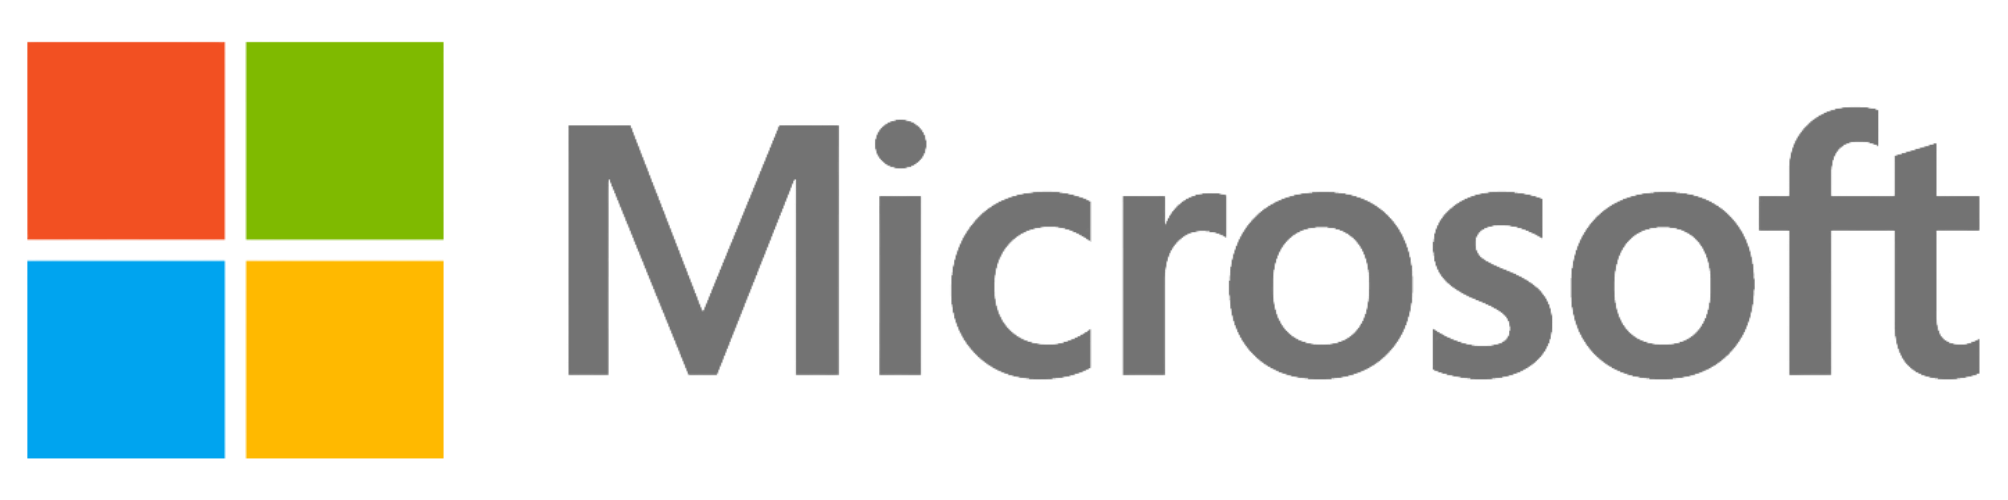 Microsoft transparente logo